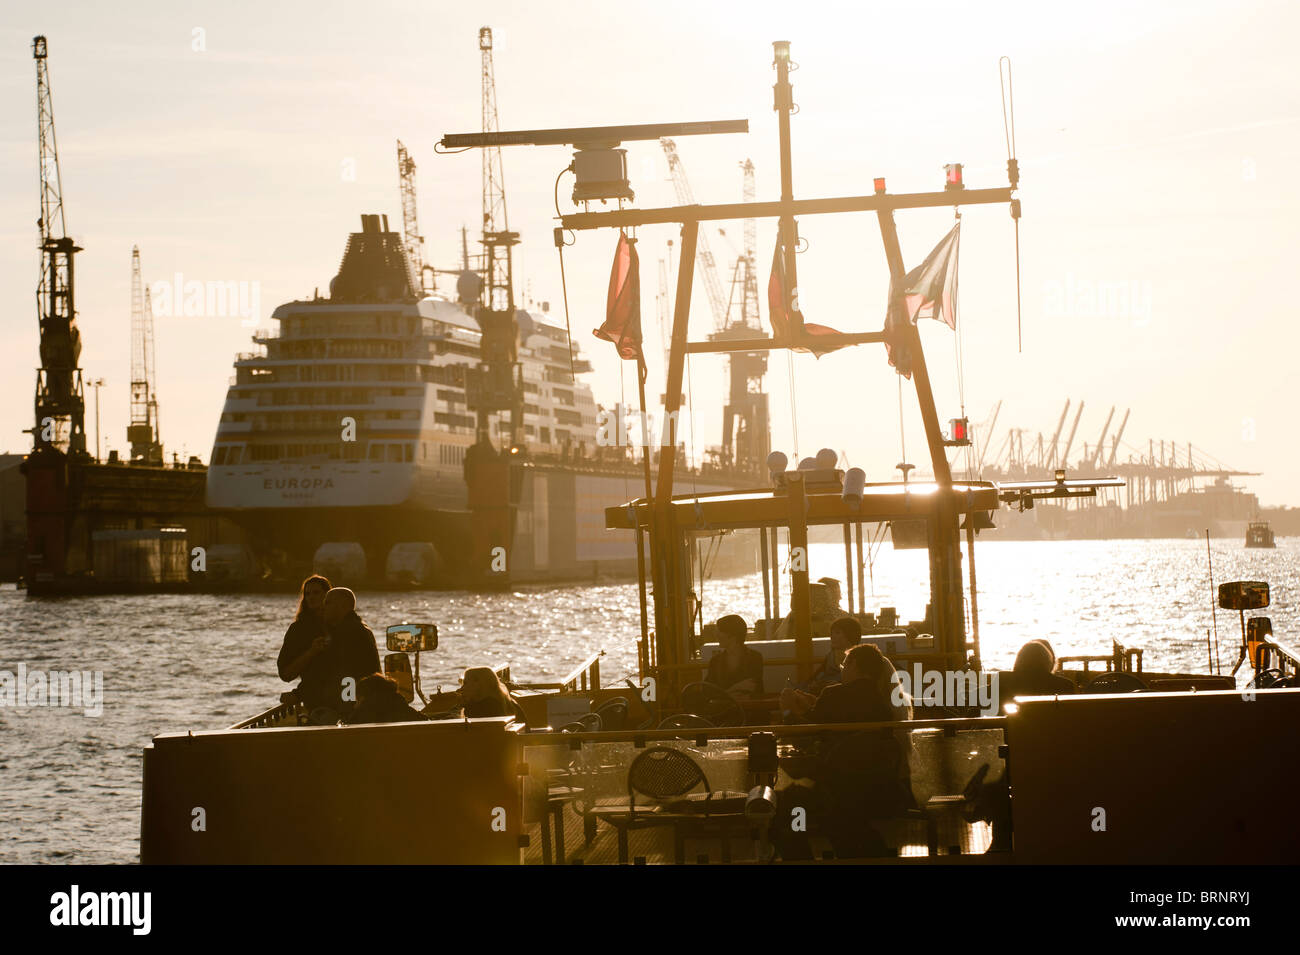 Germania Amburgo , porto fluviale con traghetto e cantiere navale Blohm e Voss con nave da crociera Europa della compagnia di navigazione Hapag Lloyd in molo galleggiante Foto Stock